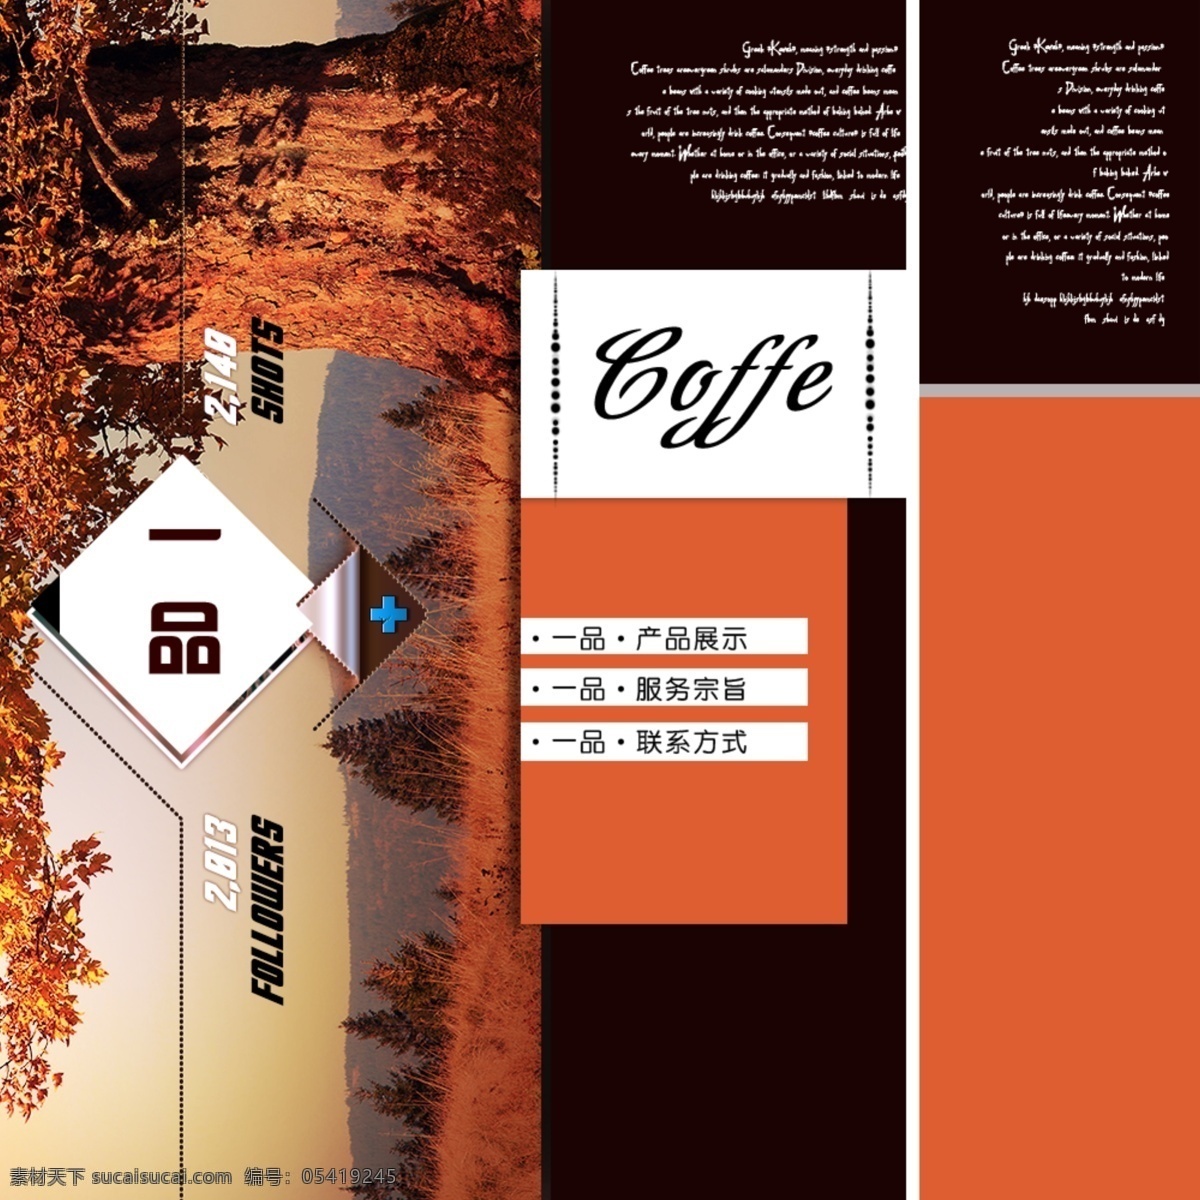 橙红色 界面设计 咖啡 网页模板 网站 源文件 中文模板 web 模板下载 首页 网页素材 网页界面设计